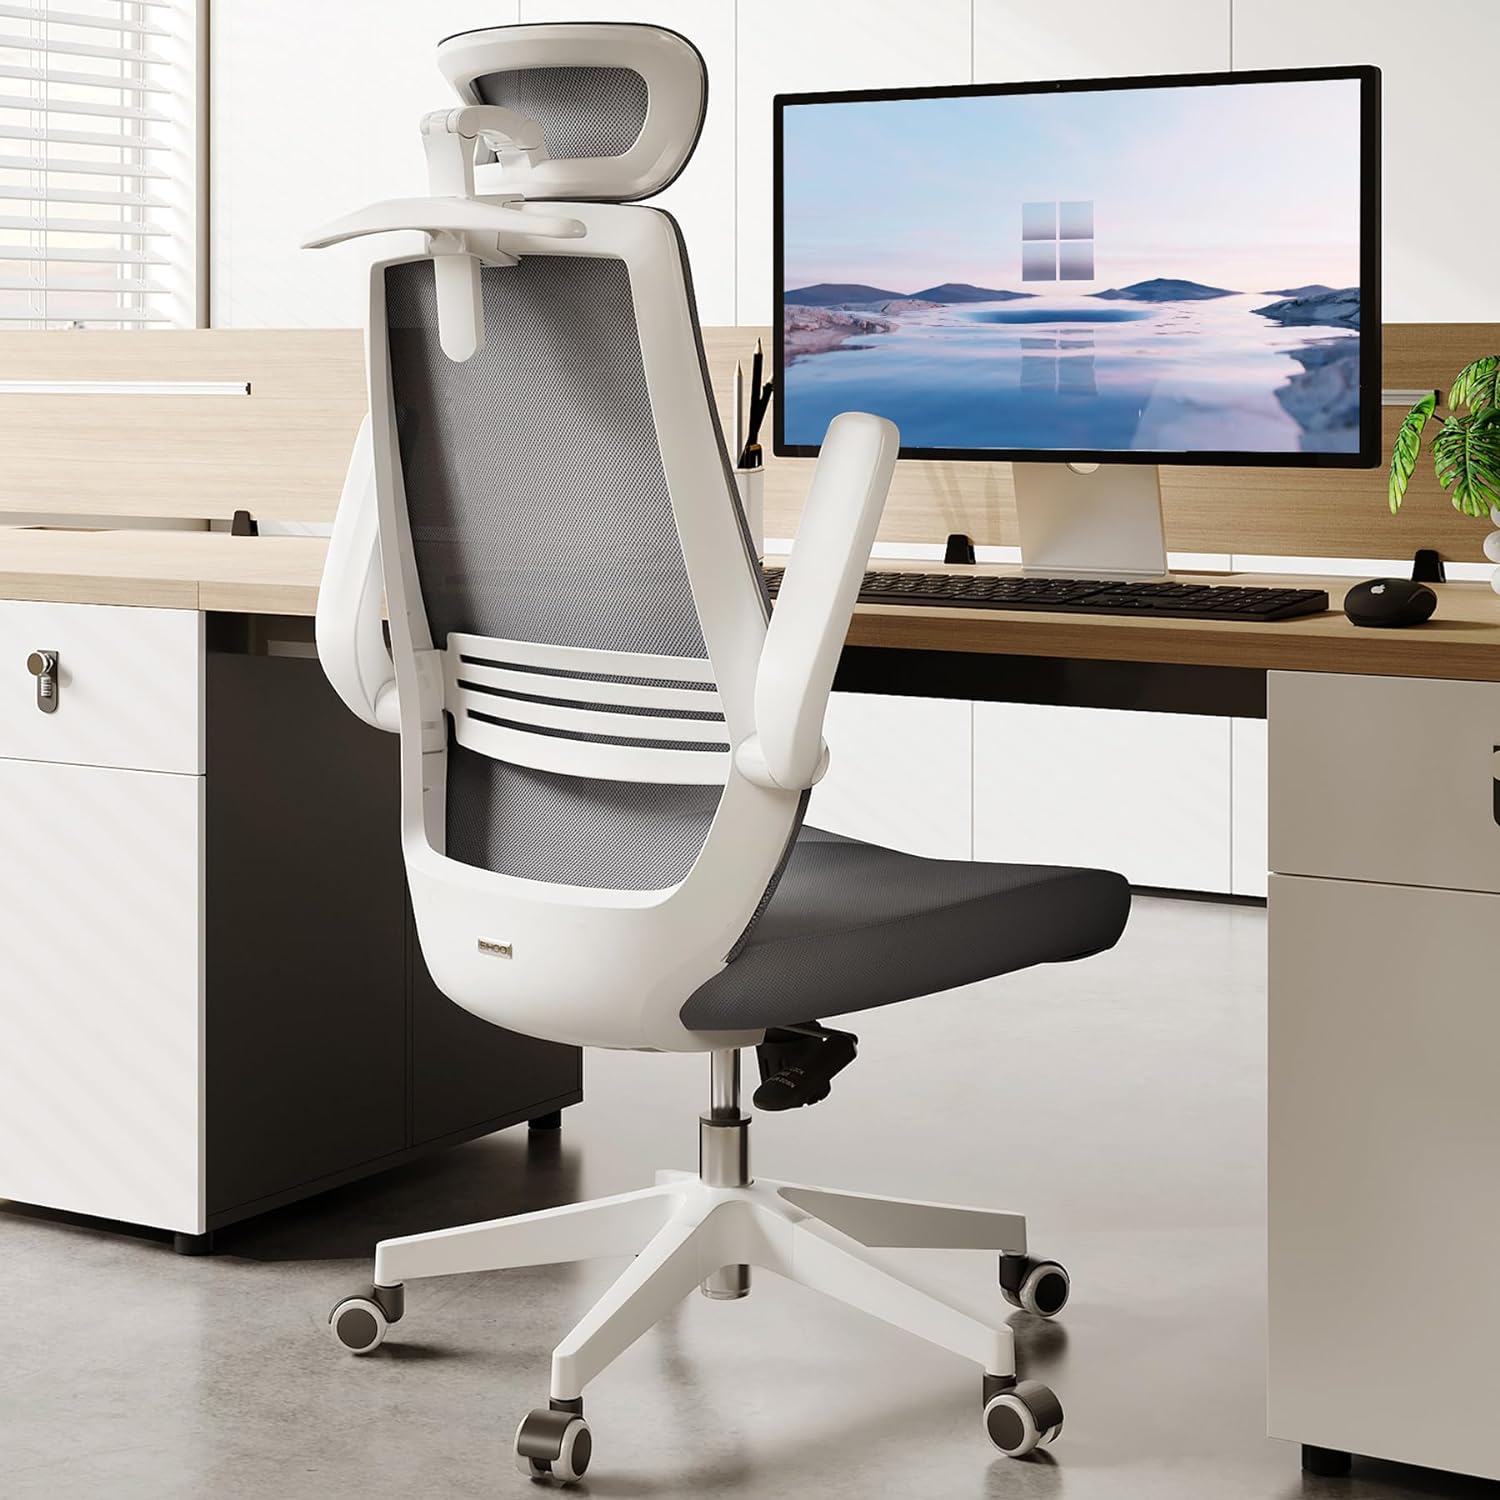 Superbambi: Scoope Design's Multitasking Chair - Core77